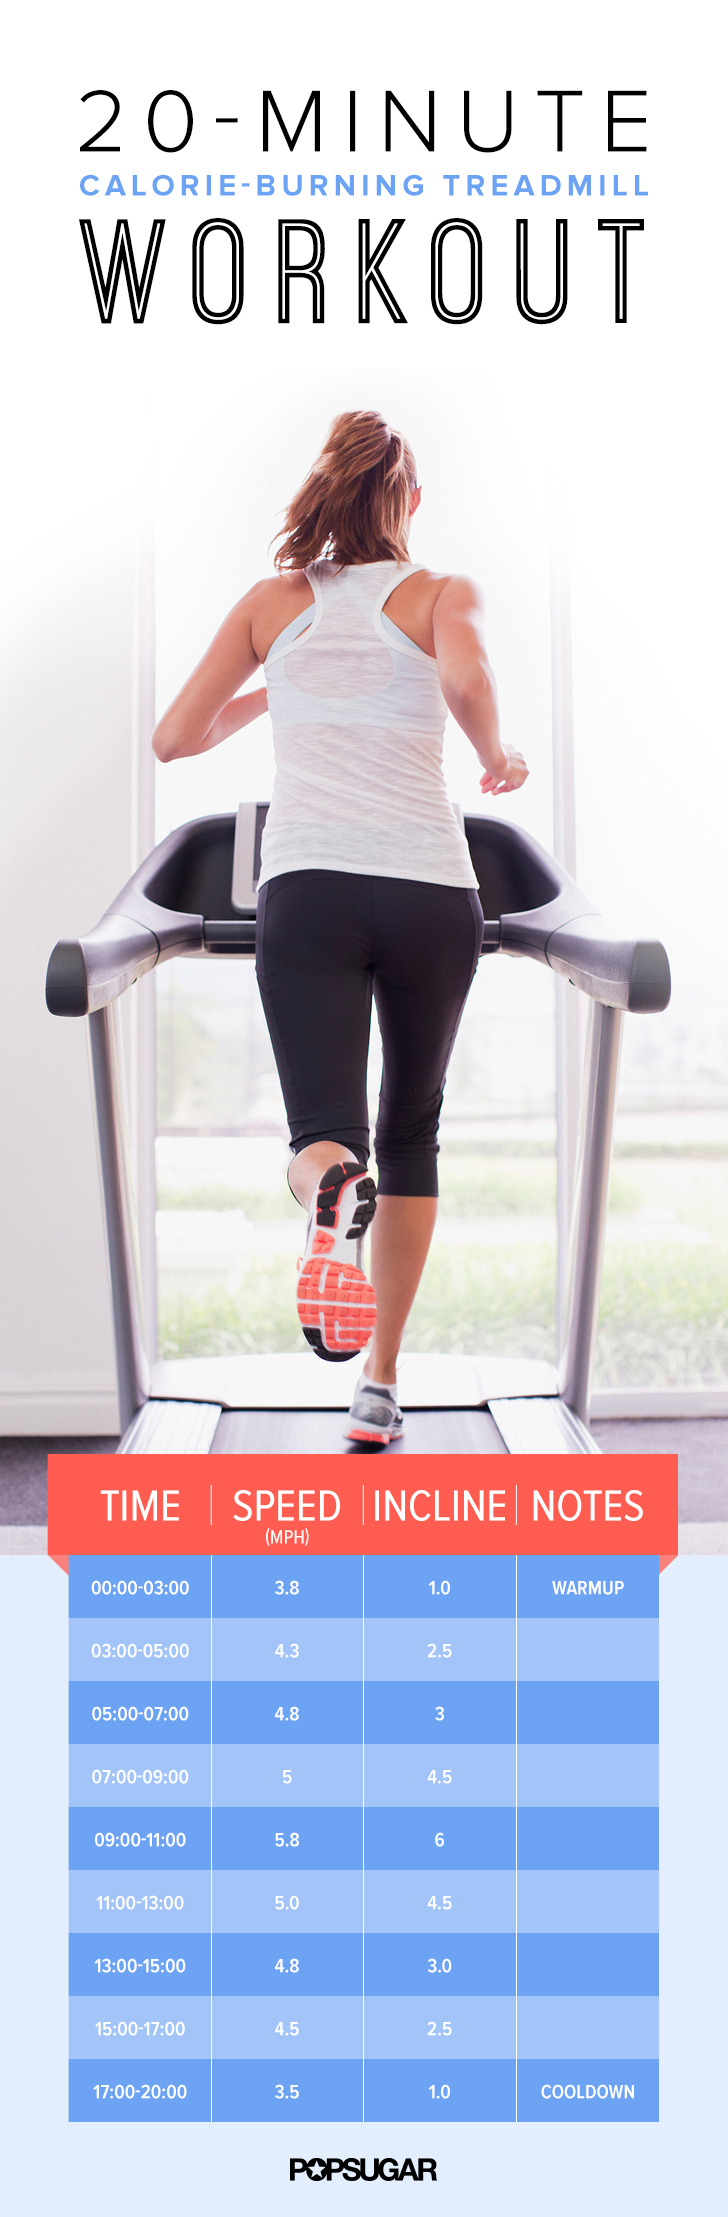 20 Minute Treadmill Workout Popsugar Fitness